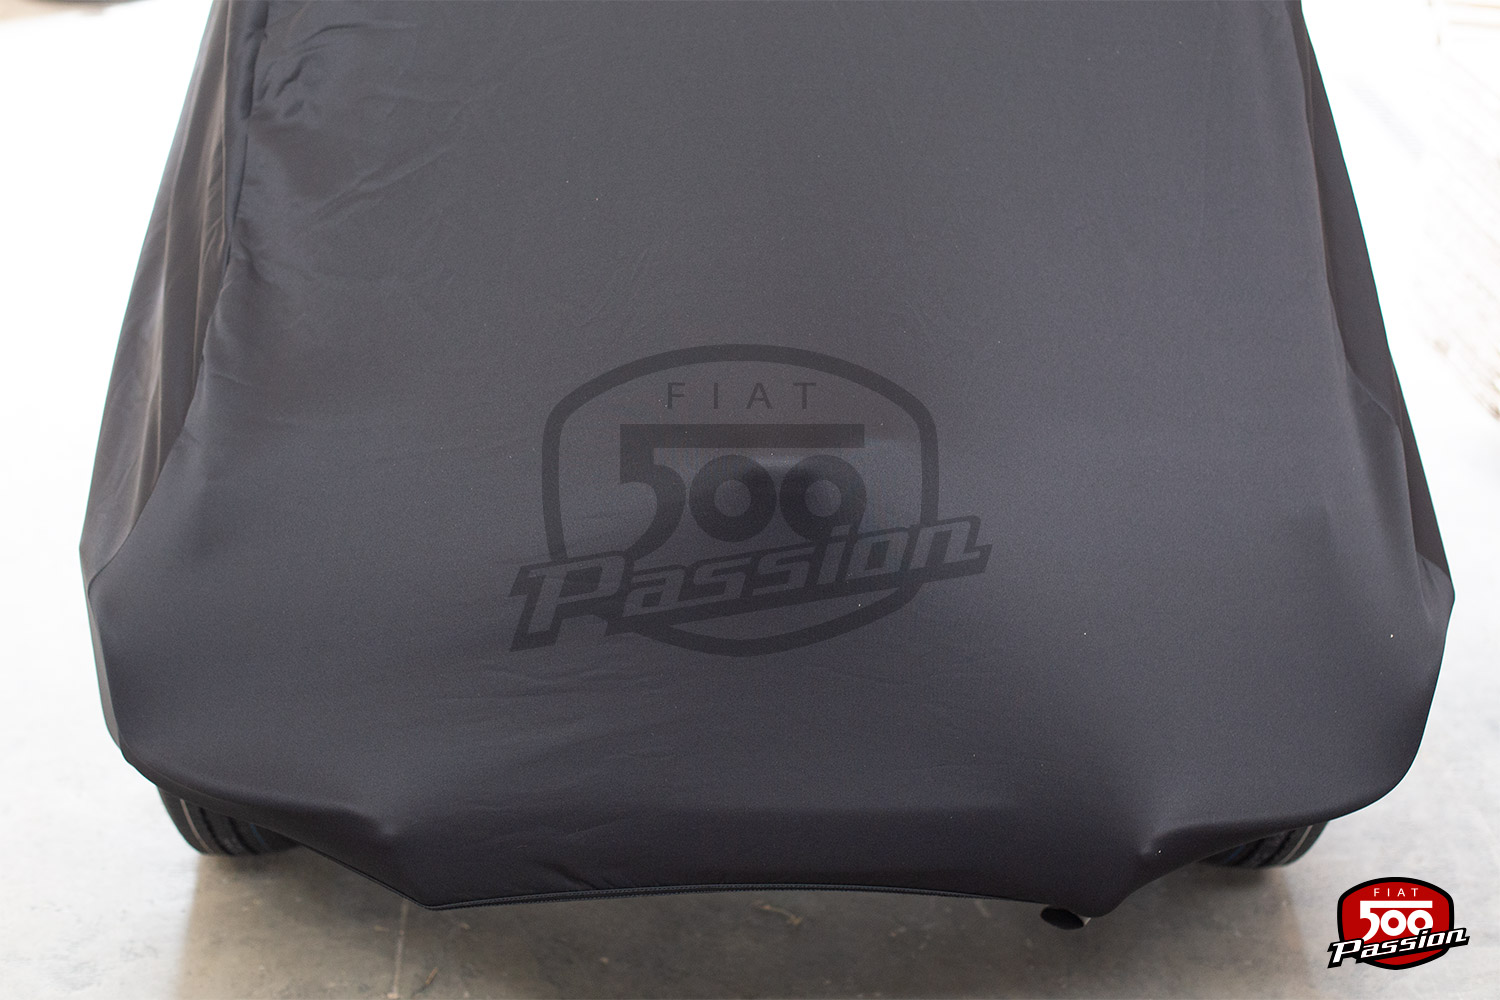  Star Cover Compatible avec Une bâche d'intérieur pour Fiat 500E  Housse Noir